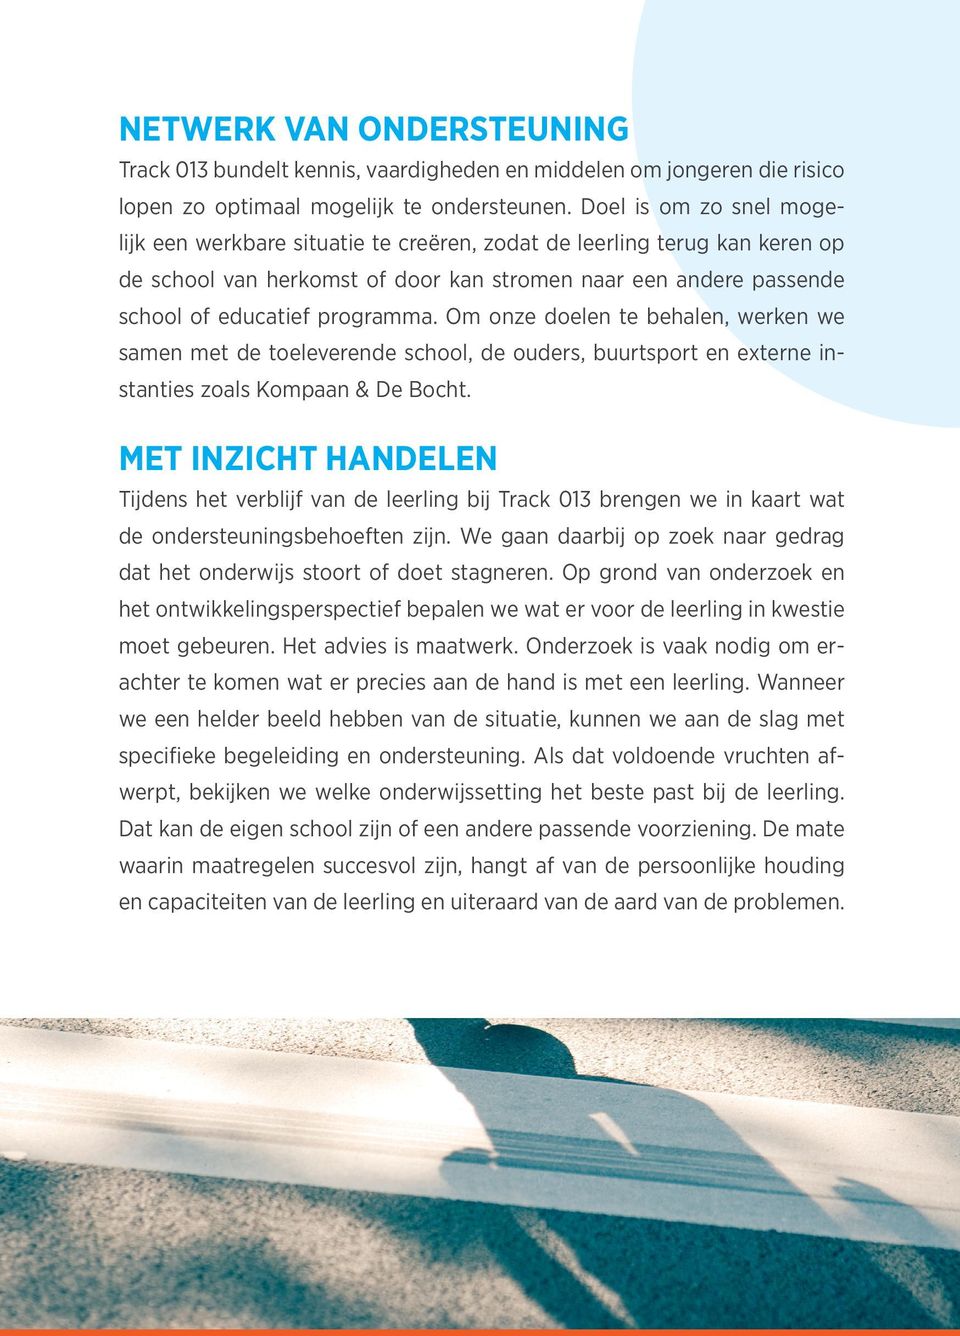 Om onze doelen te behalen, werken we samen met de toeleverende school, de ouders, buurtsport en externe instanties zoals Kompaan & De Bocht.